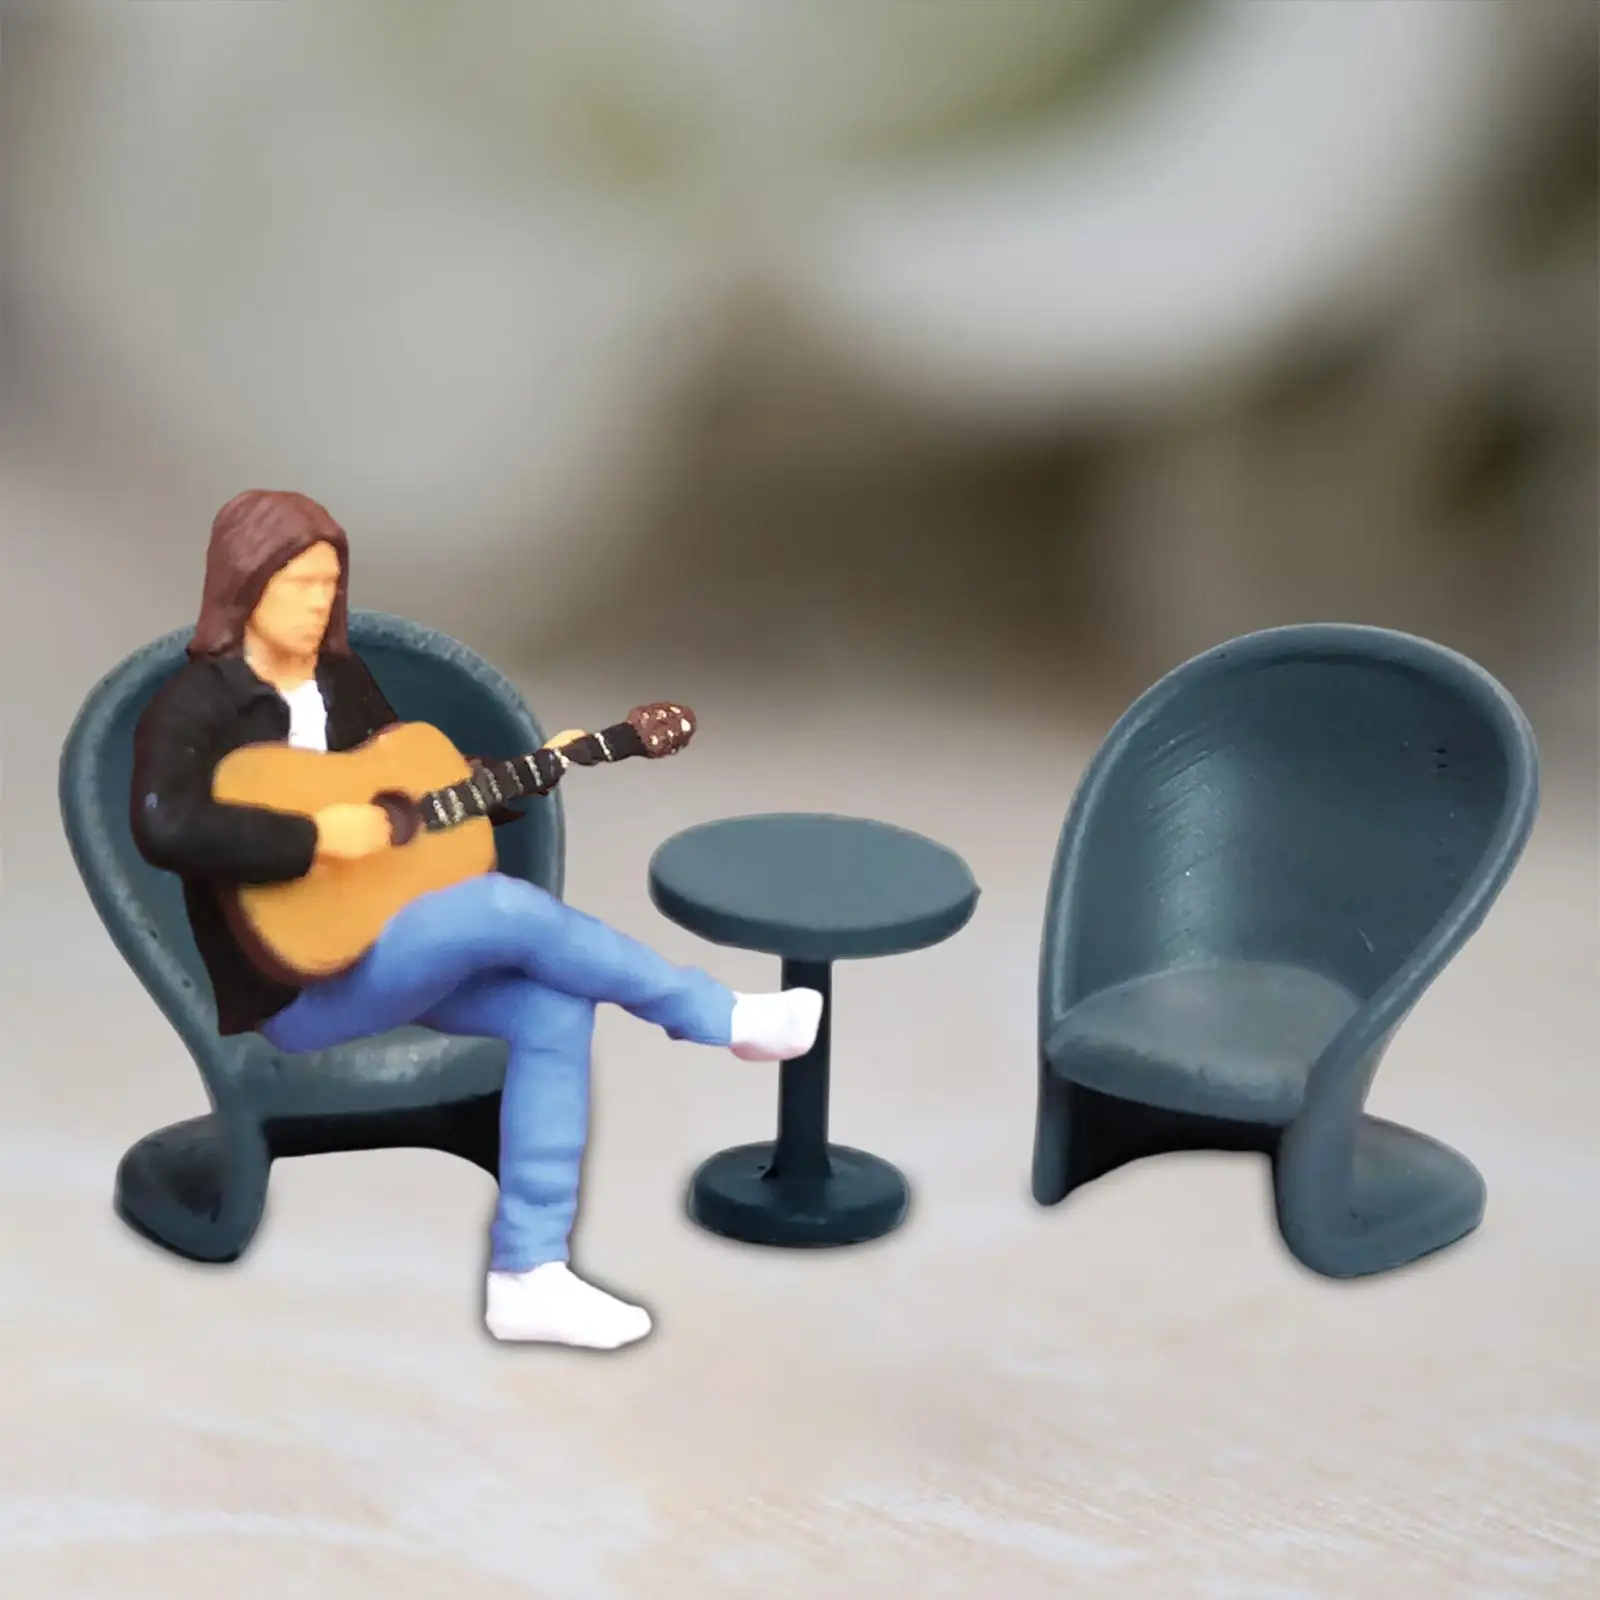 1/64 Scale Miniature Model Figures 1/64 Music Figures 1/64 Scale Music Figurine